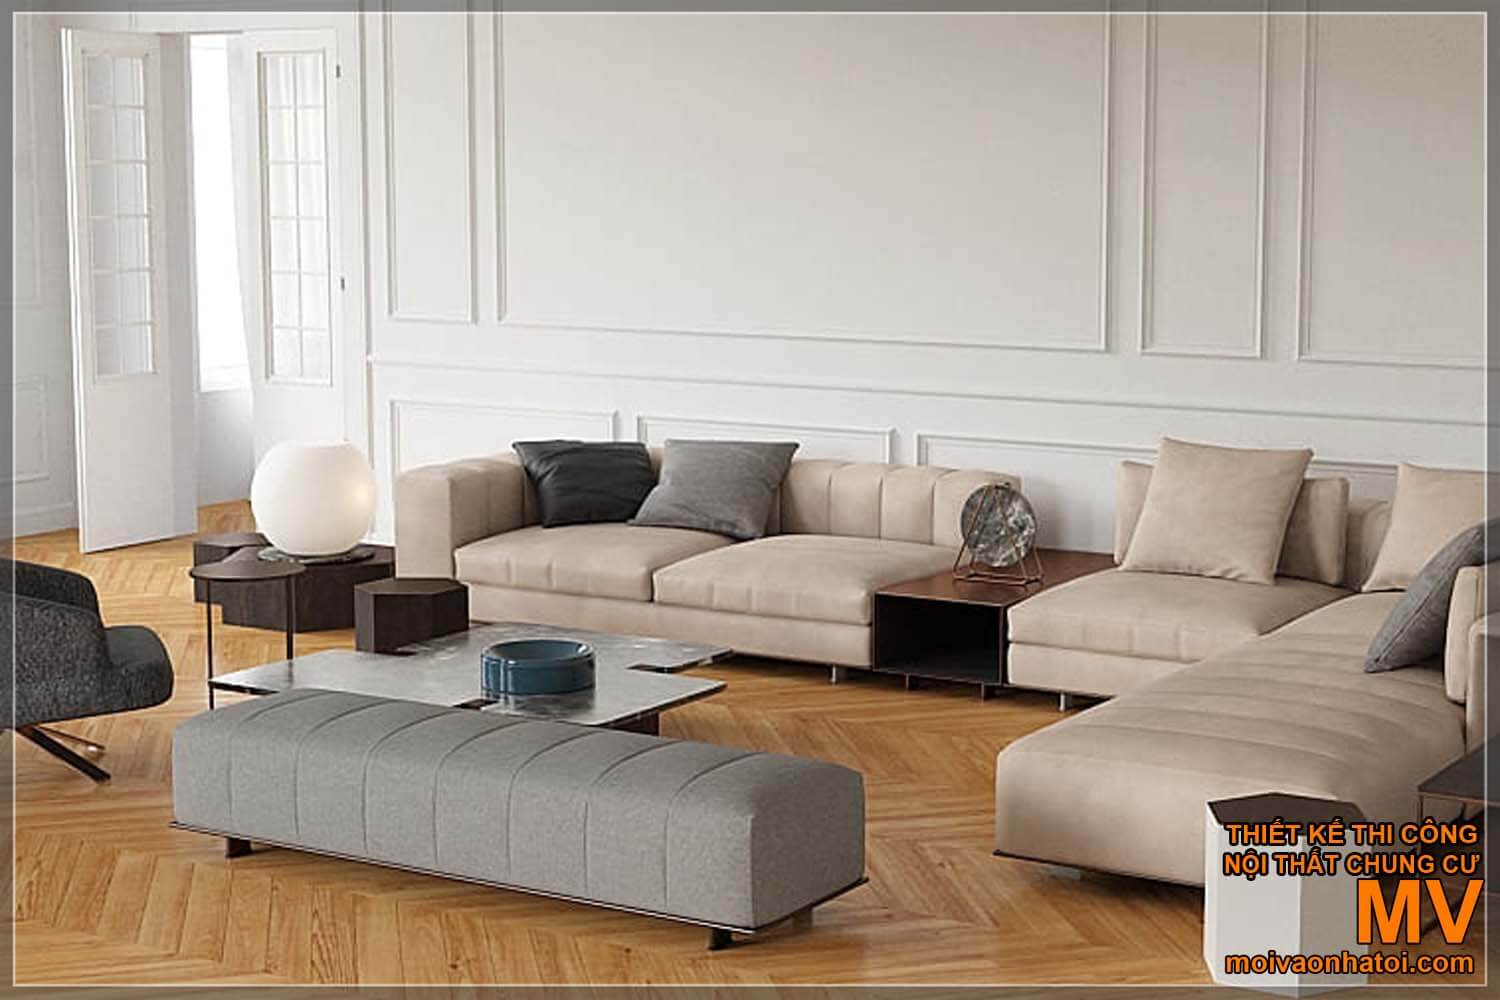 model sofa modern dan sederhana untuk rumah neoklasik